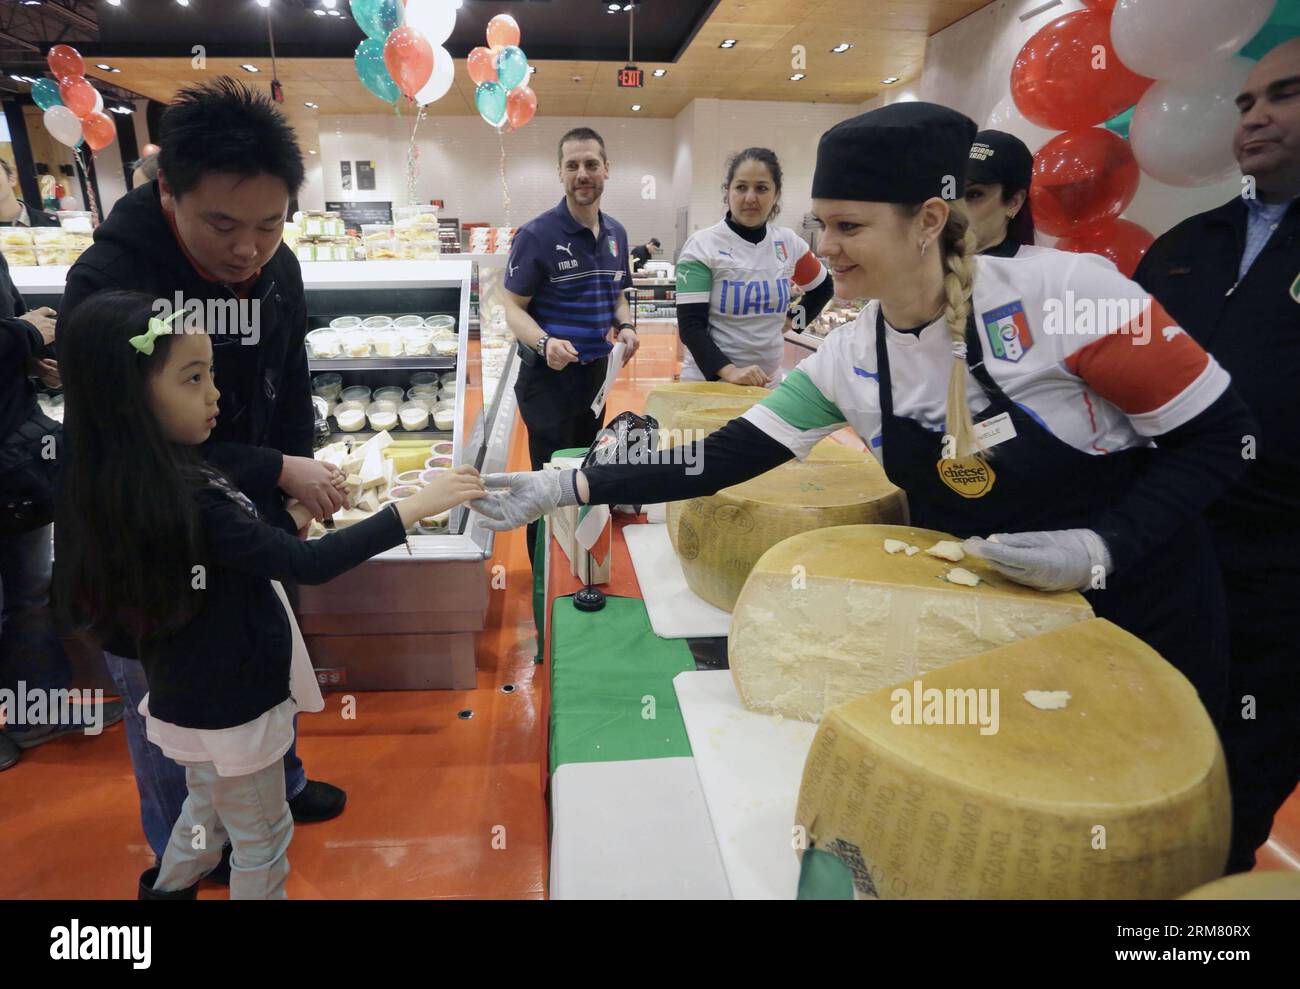 Ein Mitarbeiter teilt einem jungen Mädchen in einem Supermarkt in Vancouver, Kanada, am 22. März 2014 ein Stück Parmigiano-Reggiano-Käse. Mehr als 360 Läden in Kanada versuchen gemeinsam, den Guinness World Records-Titel für die meisten Parmigiano-Reggiano-Käseräder zu brechen, die gleichzeitig gerissen werden. Der aktuelle Weltrekord liegt bei 426 Rädern, die 2013 erreicht wurden. Parmigiano-Reggiano ist der König des Käses, der in Italien nach dem gleichen Rezept seit fast 1.000 Jahren hergestellt wird. (Xinhua/Liang Sen) CANADA-VANCOUVER-CHEESE-CRACKING PUBLICATIONxNOTxINxCHN A Staff teilt ein Stück o Stockfoto